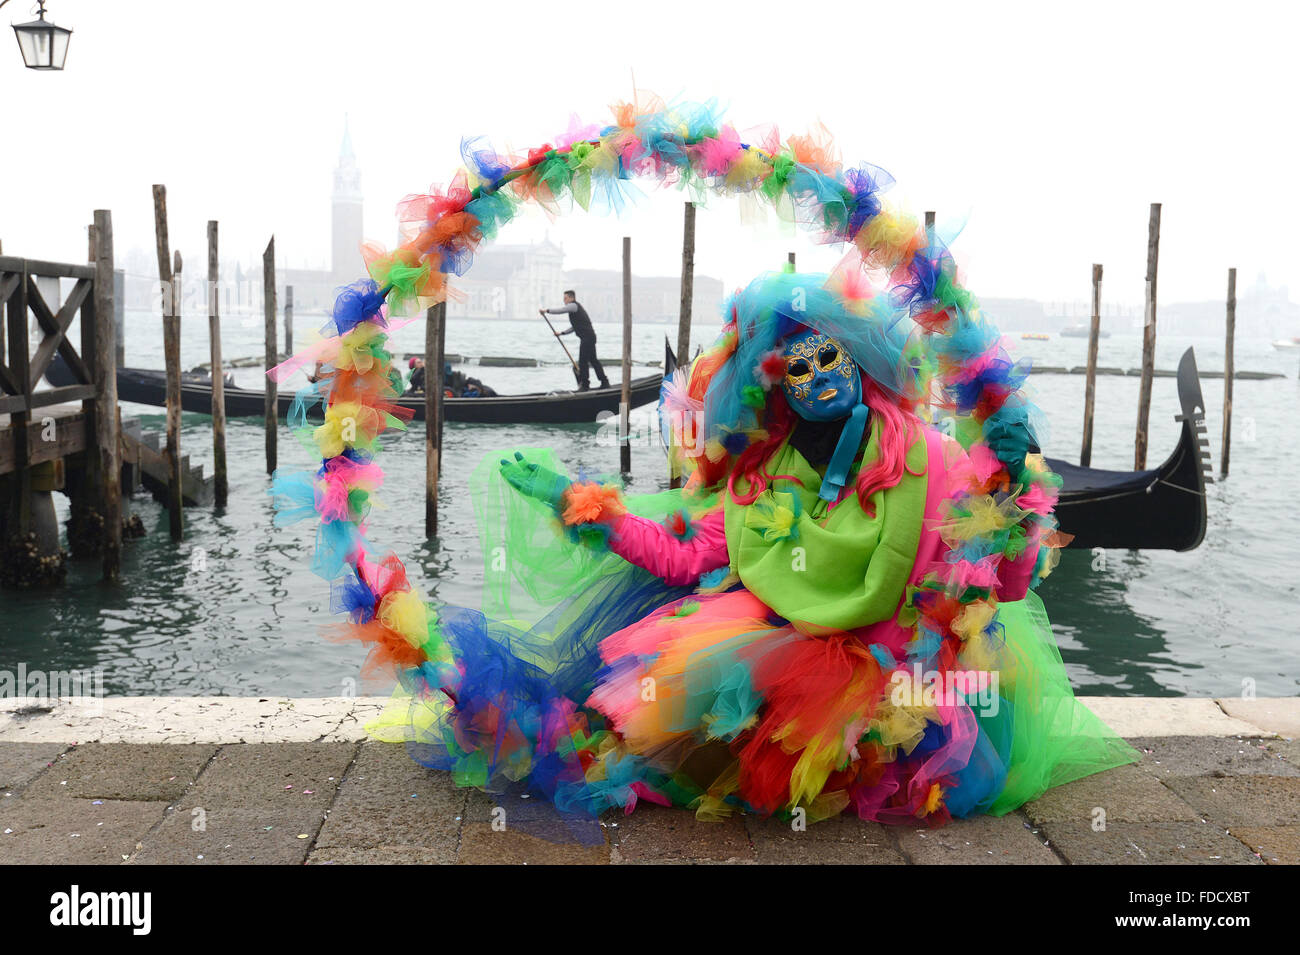 Venedig, Italien. 30. Januar 2016. Der Karneval von Venedig ist ein jährliches Festival in Venedig statt. Karneval offiziell läuft für 10 Tage auf die christliche Feier der Fastenzeit, in diesem Jahr endet jedoch gehörte eine Add-on Woche verlängern den Karneval zu helfen Boost Teilnahme nach Venedig auf, was eine in der Regel eine ruhige Zeit für Besucher der Stadt. Bildnachweis: MARTIN DALTON/Alamy Live-Nachrichten Stockfoto